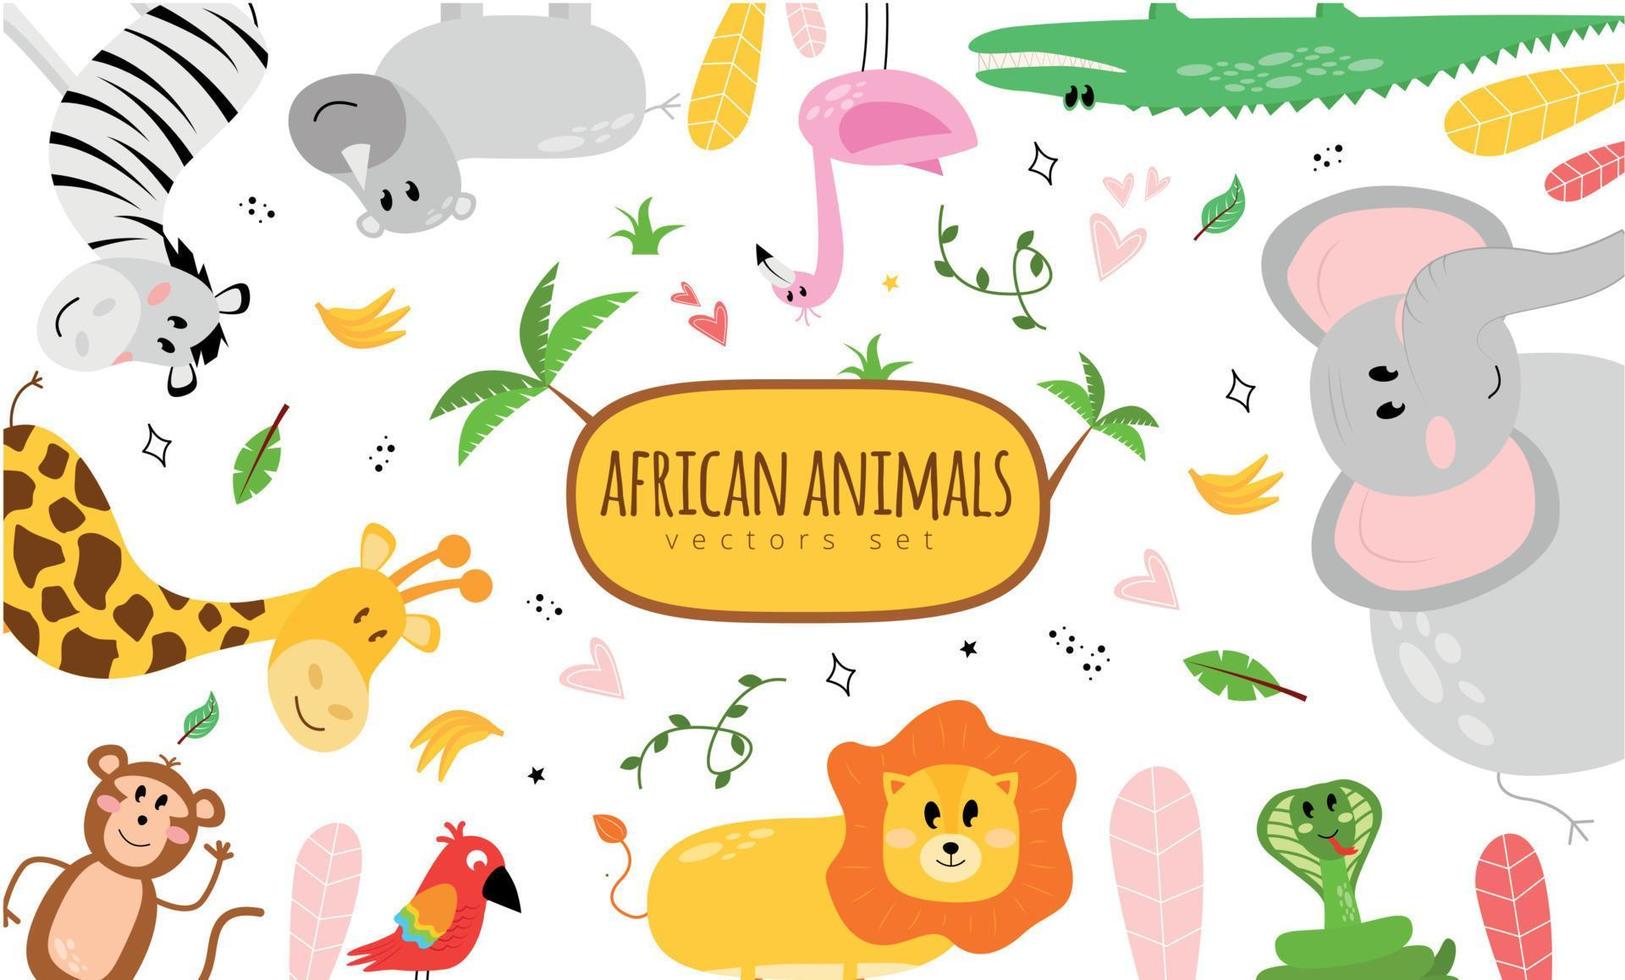 ilustración con animales y el inscripción africano animales vector colocar. ilustración con un cebra, rinoceronte, flamenco, cocodrilo, elefante, serpiente, león, loro, mono, jirafa.